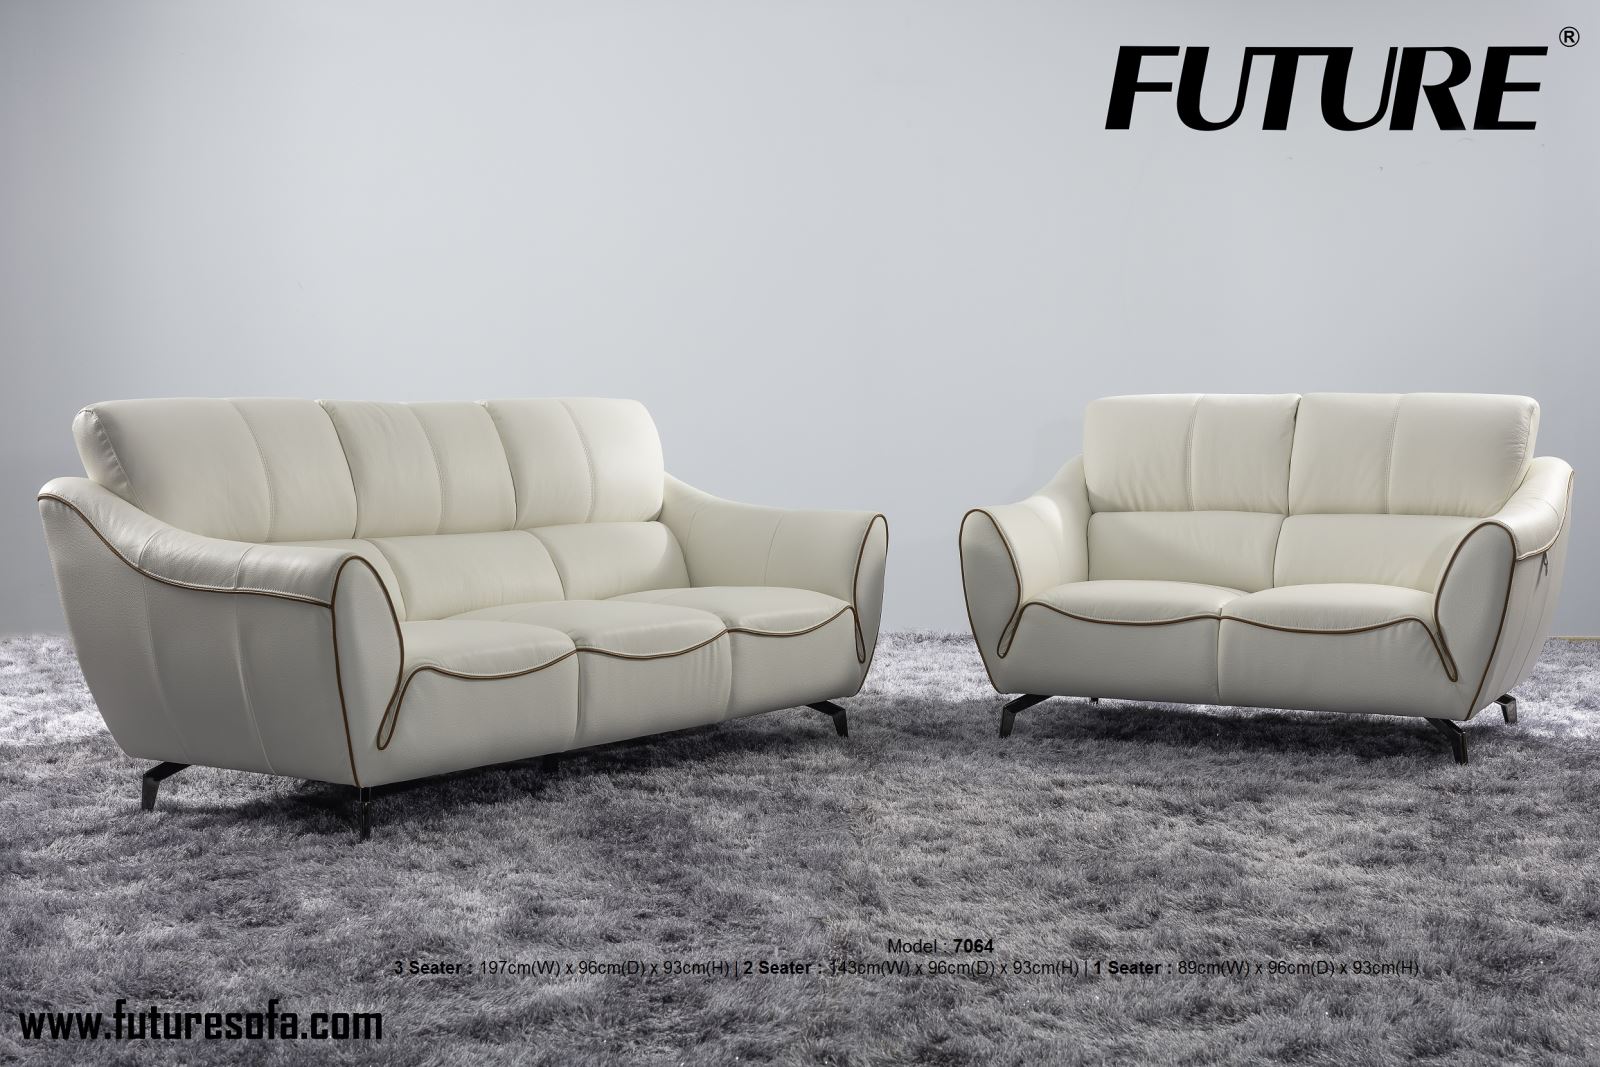 Cách bảo quản ghế sofa da bền vững theo thời gian - Ảnh 3